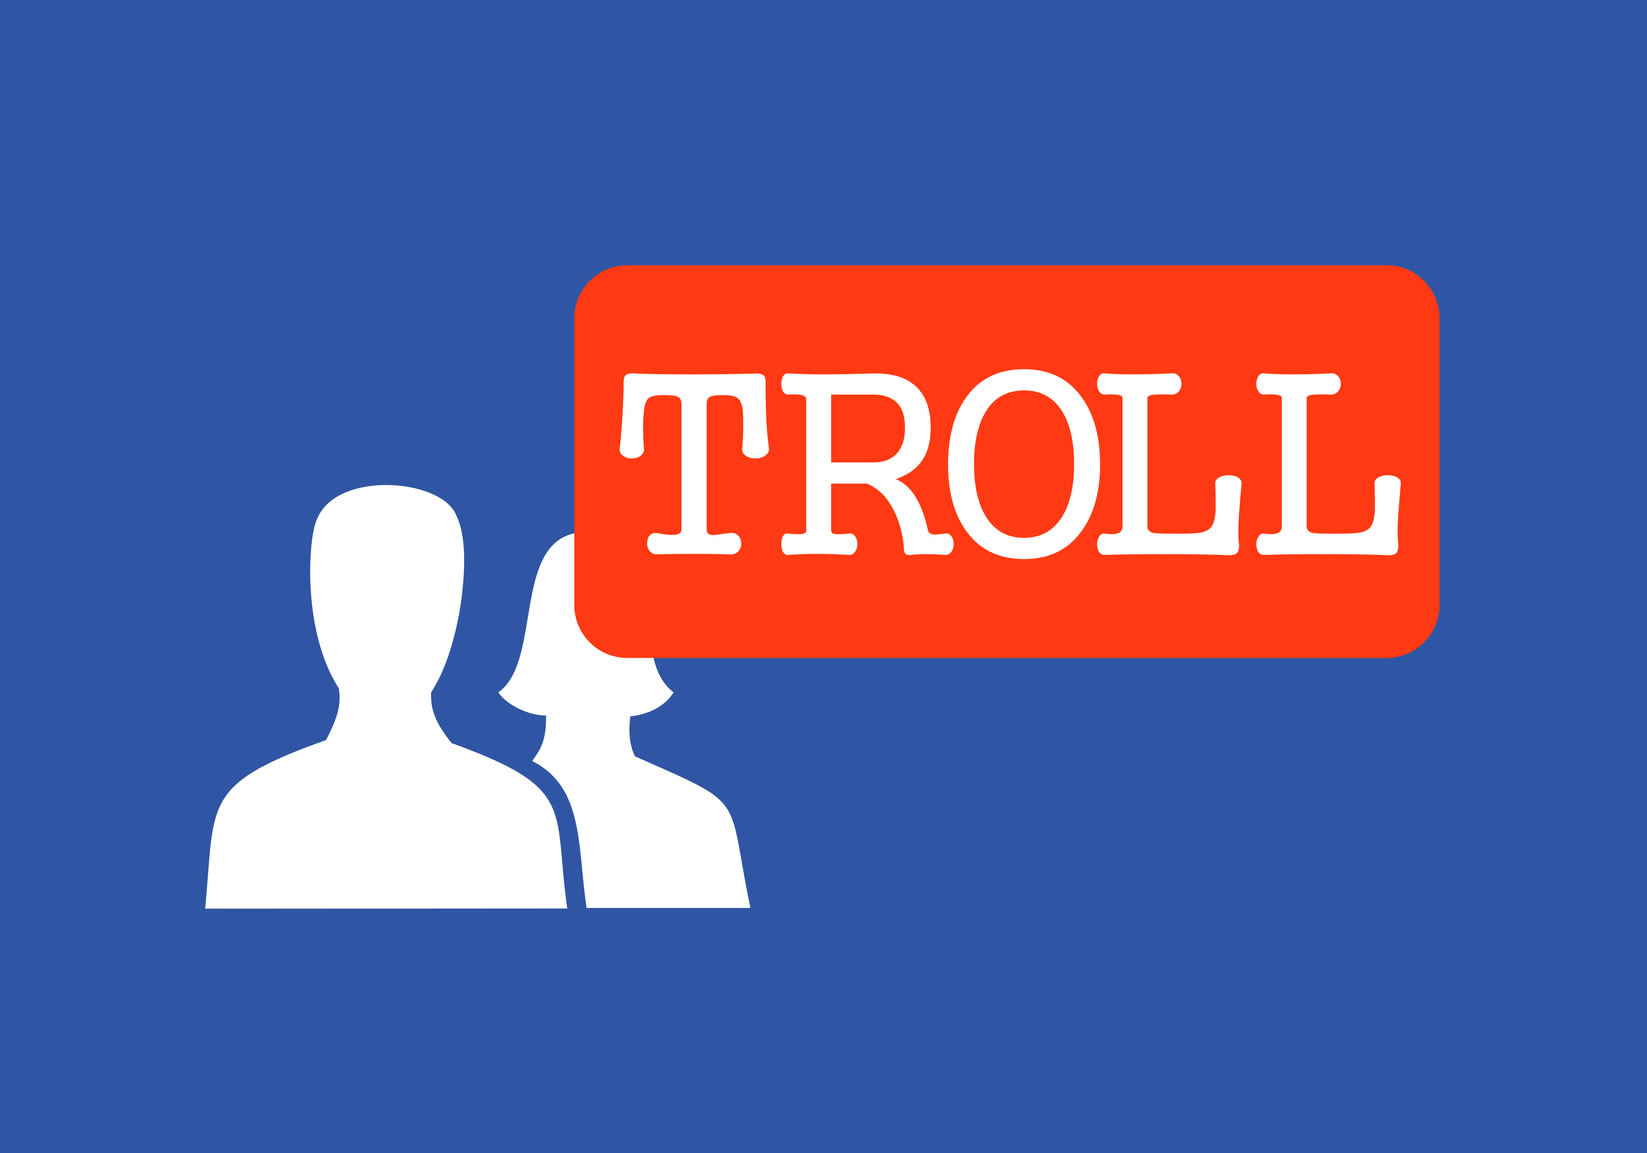 TROLL - Definição e sinônimos de troll no dicionário francês